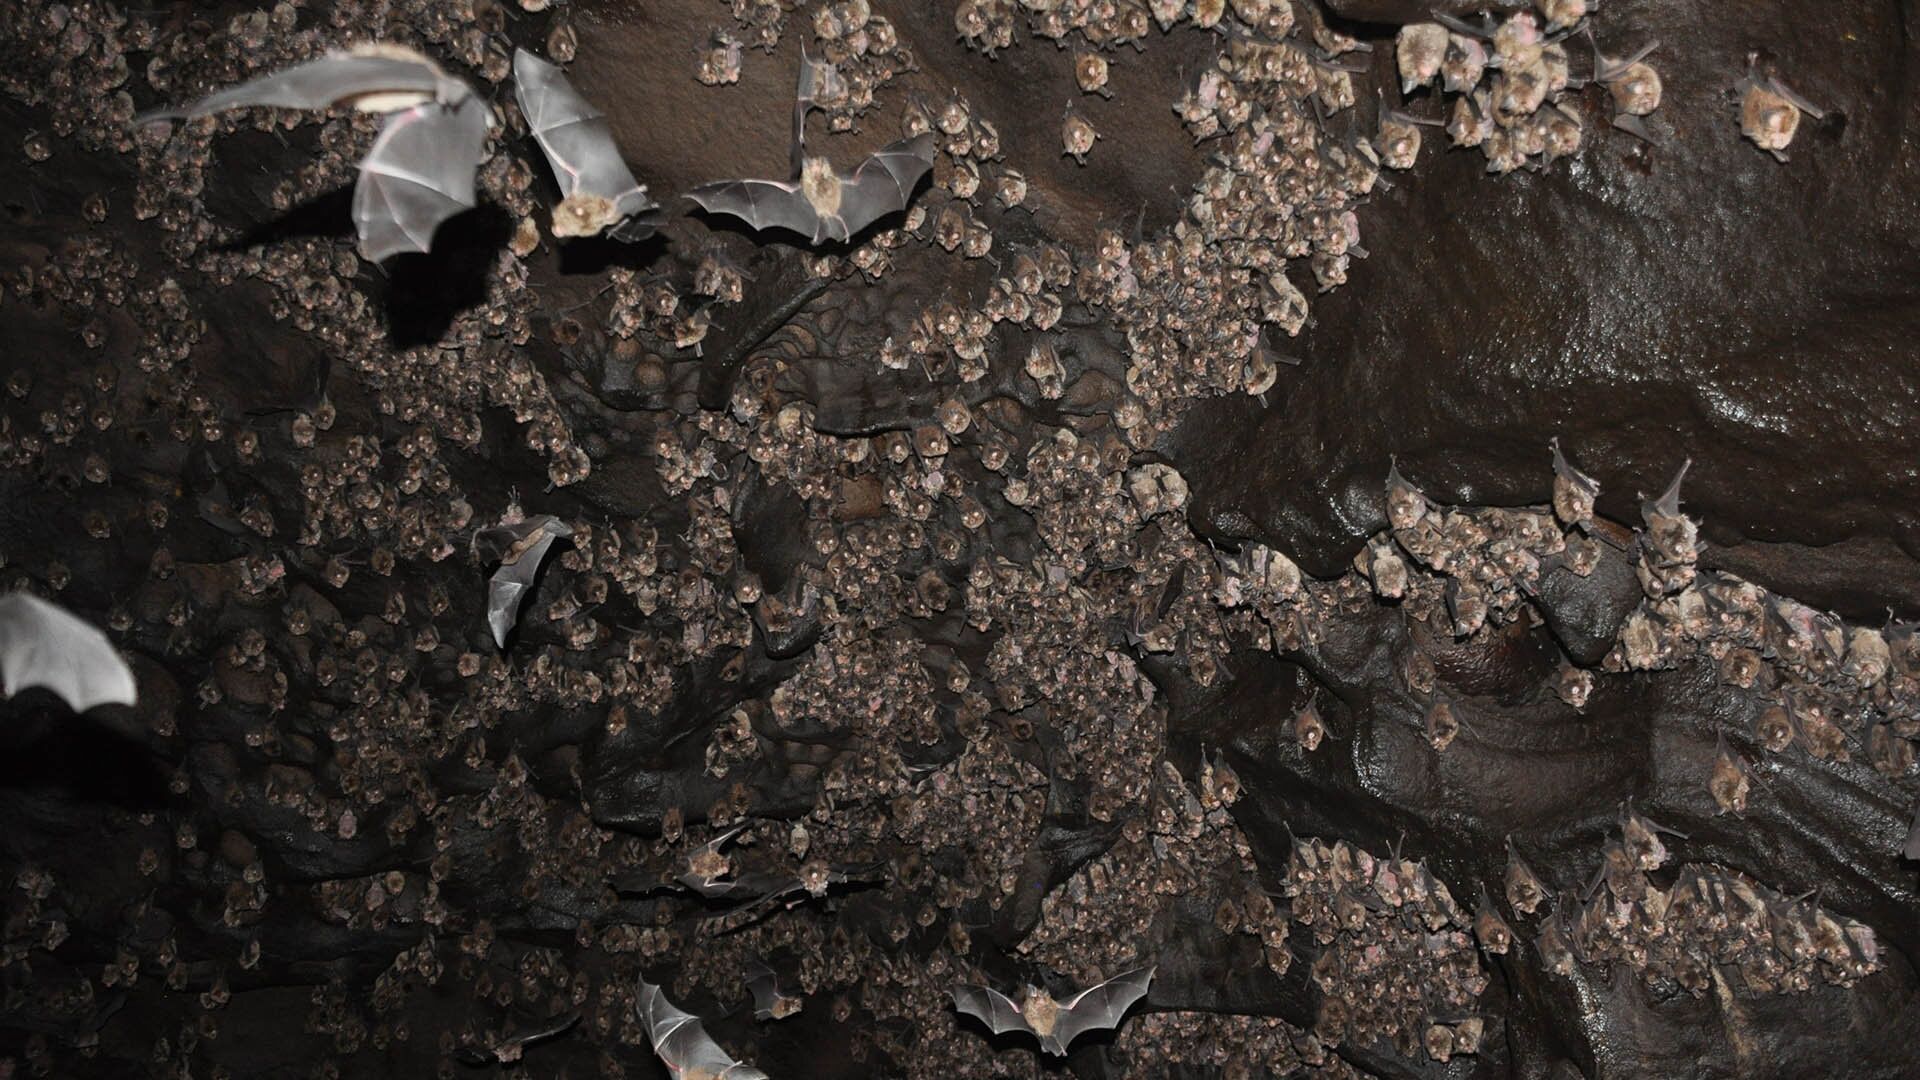 'Ciência maluca': arqueólogos estudam fezes de morcego para decifrar passado da humanidade (FOTOS) - Sputnik Brasil, 1920, 08.04.2021